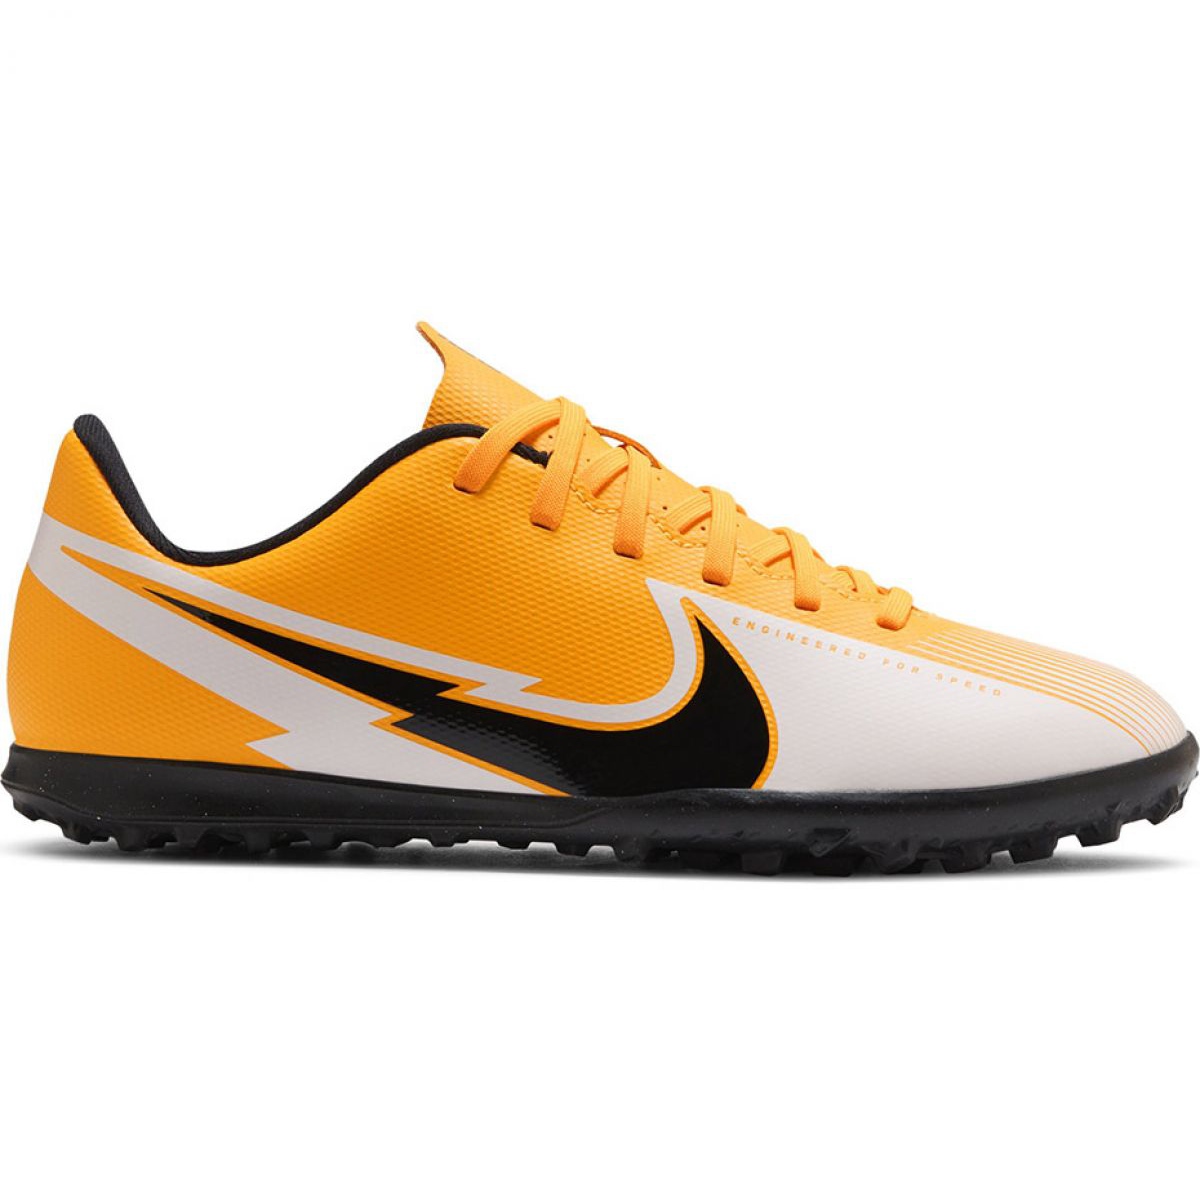 Buty piłkarskie Nike Mercurial Vapor 13 Club Tf M AT7999 801 pomarańczowe